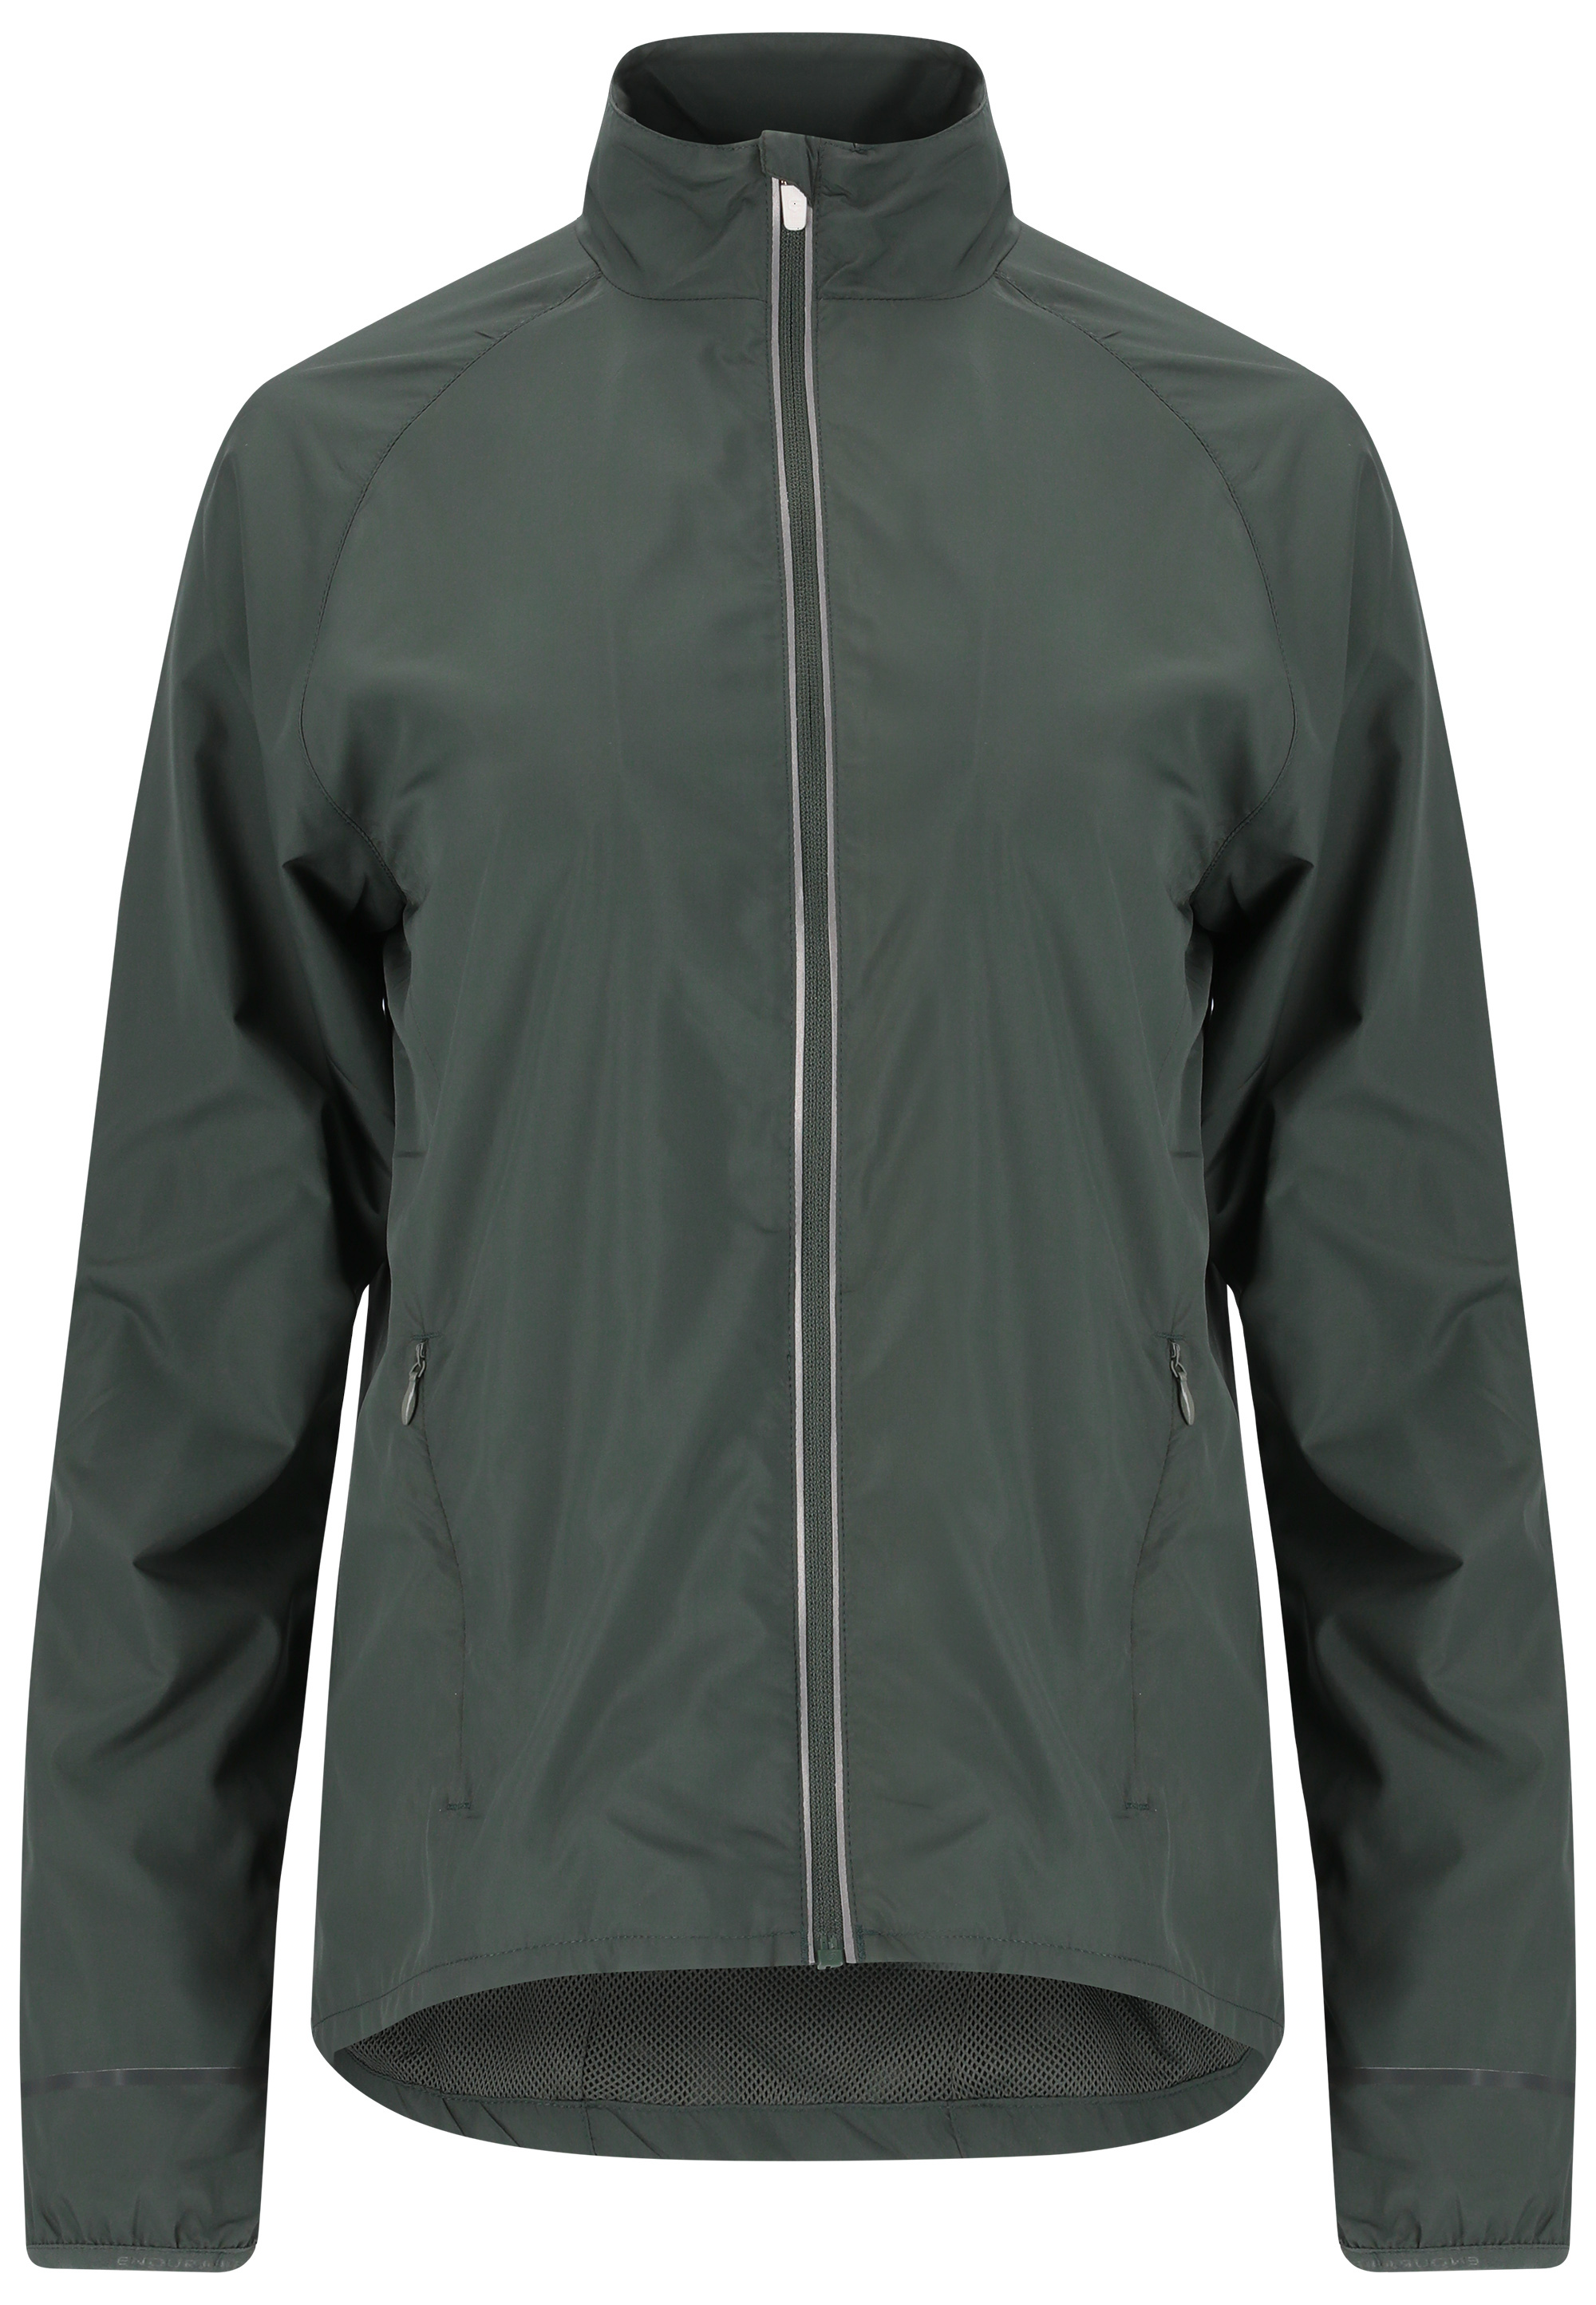 Спортивная куртка Endurance Shela, цвет 3130 Desert Green беговая куртка endurance shela цвет braun